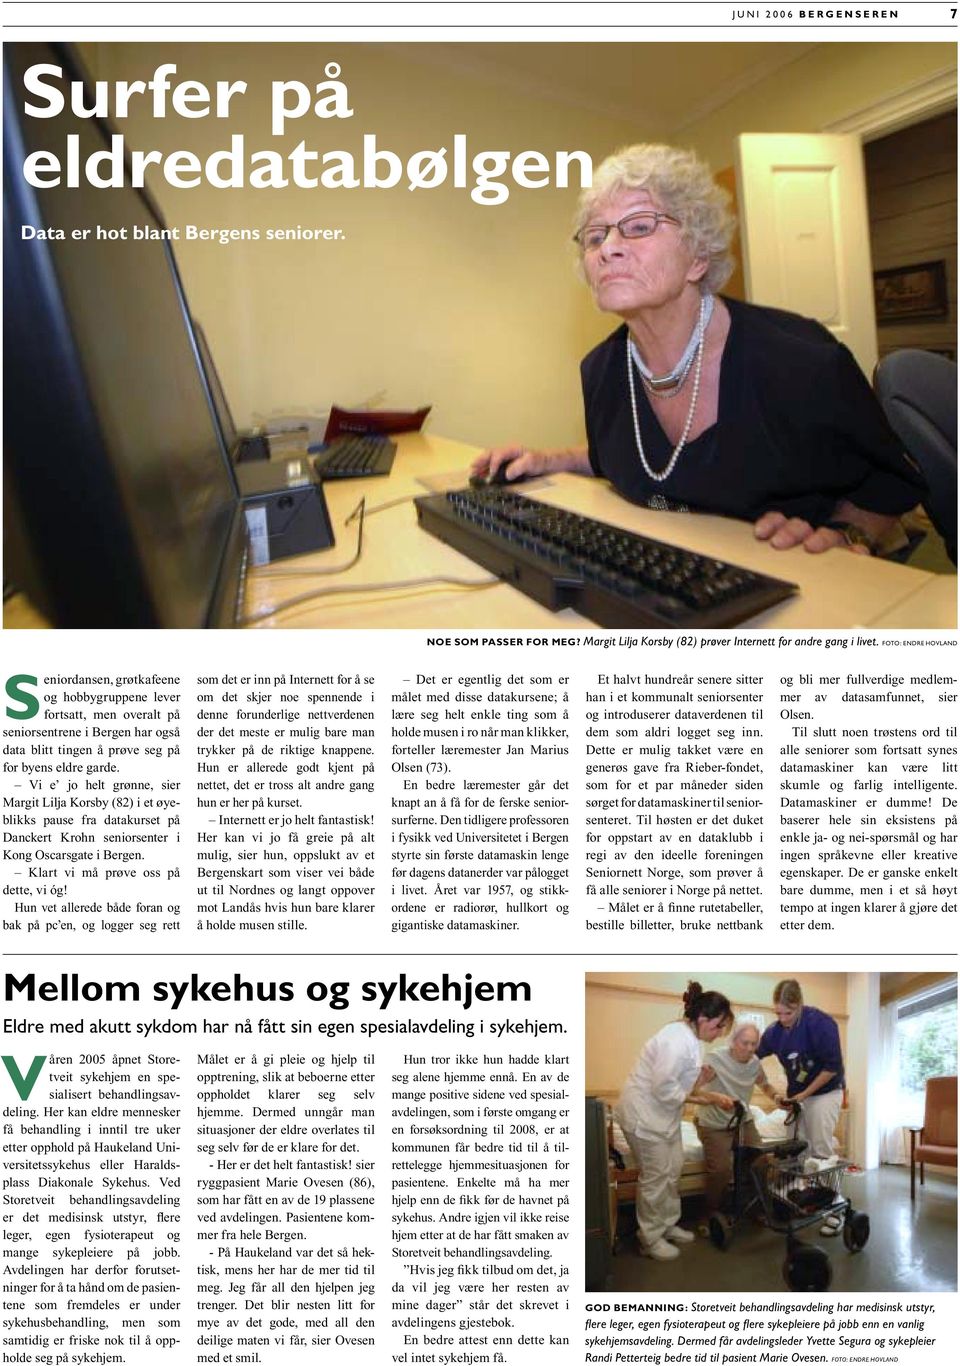 Vi e jo helt grønne, sier Margit Lilja Korsby (82) i et øyeblikks pause fra datakurset på Danckert Krohn seniorsenter i Kong Oscars gate i Bergen. Klart vi må prøve oss på dette, vi óg!